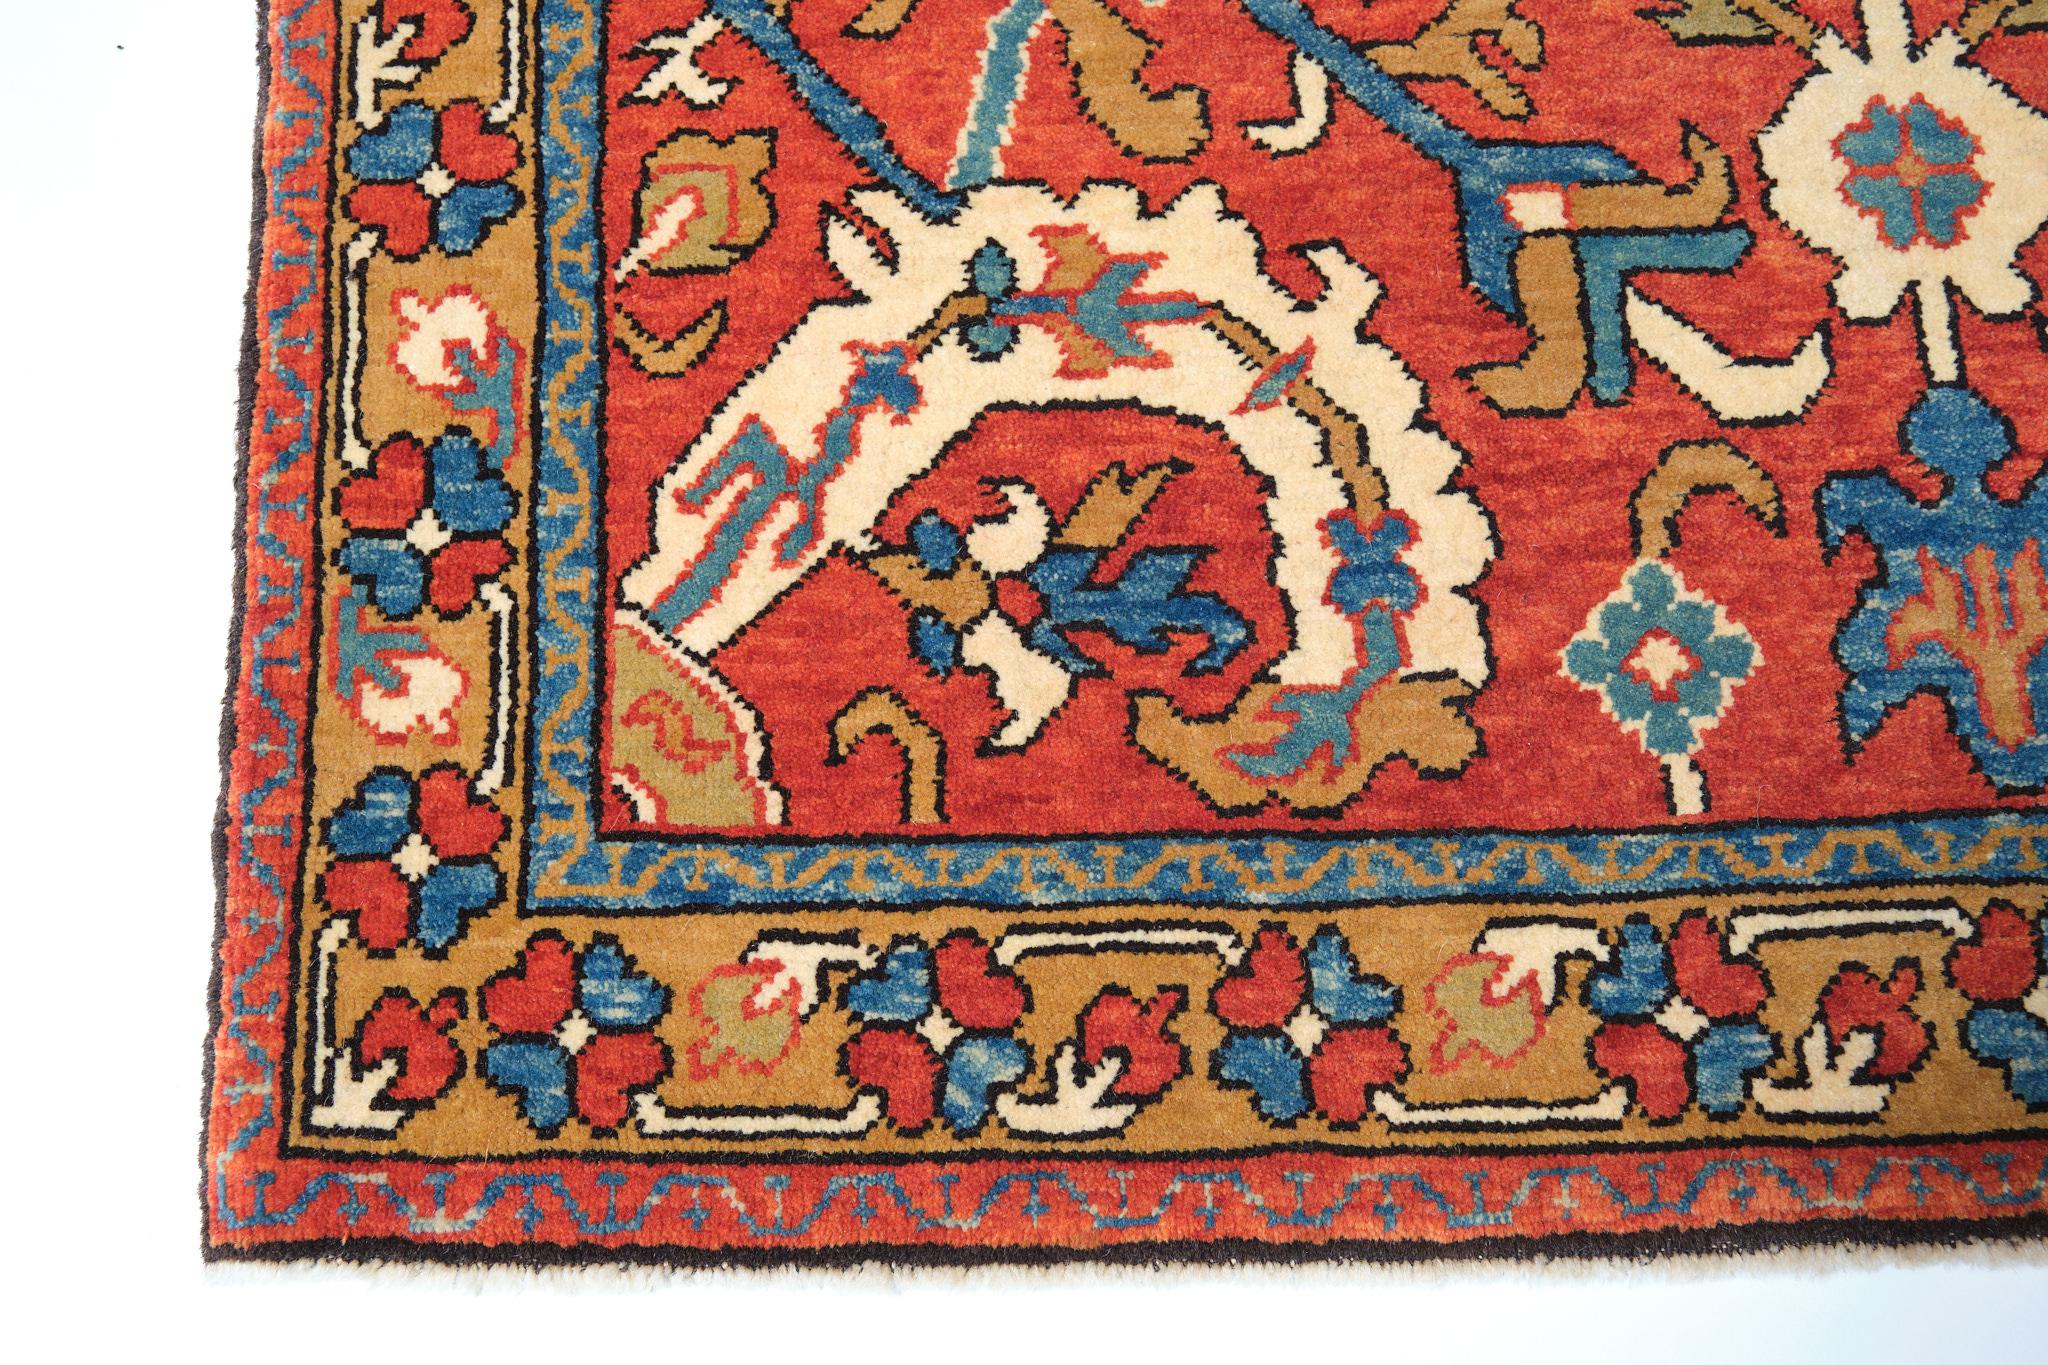 Die Symbolik des Drachens und seine Darstellung in gewebten Teppichen fasziniert seit langem. Das Muster der 